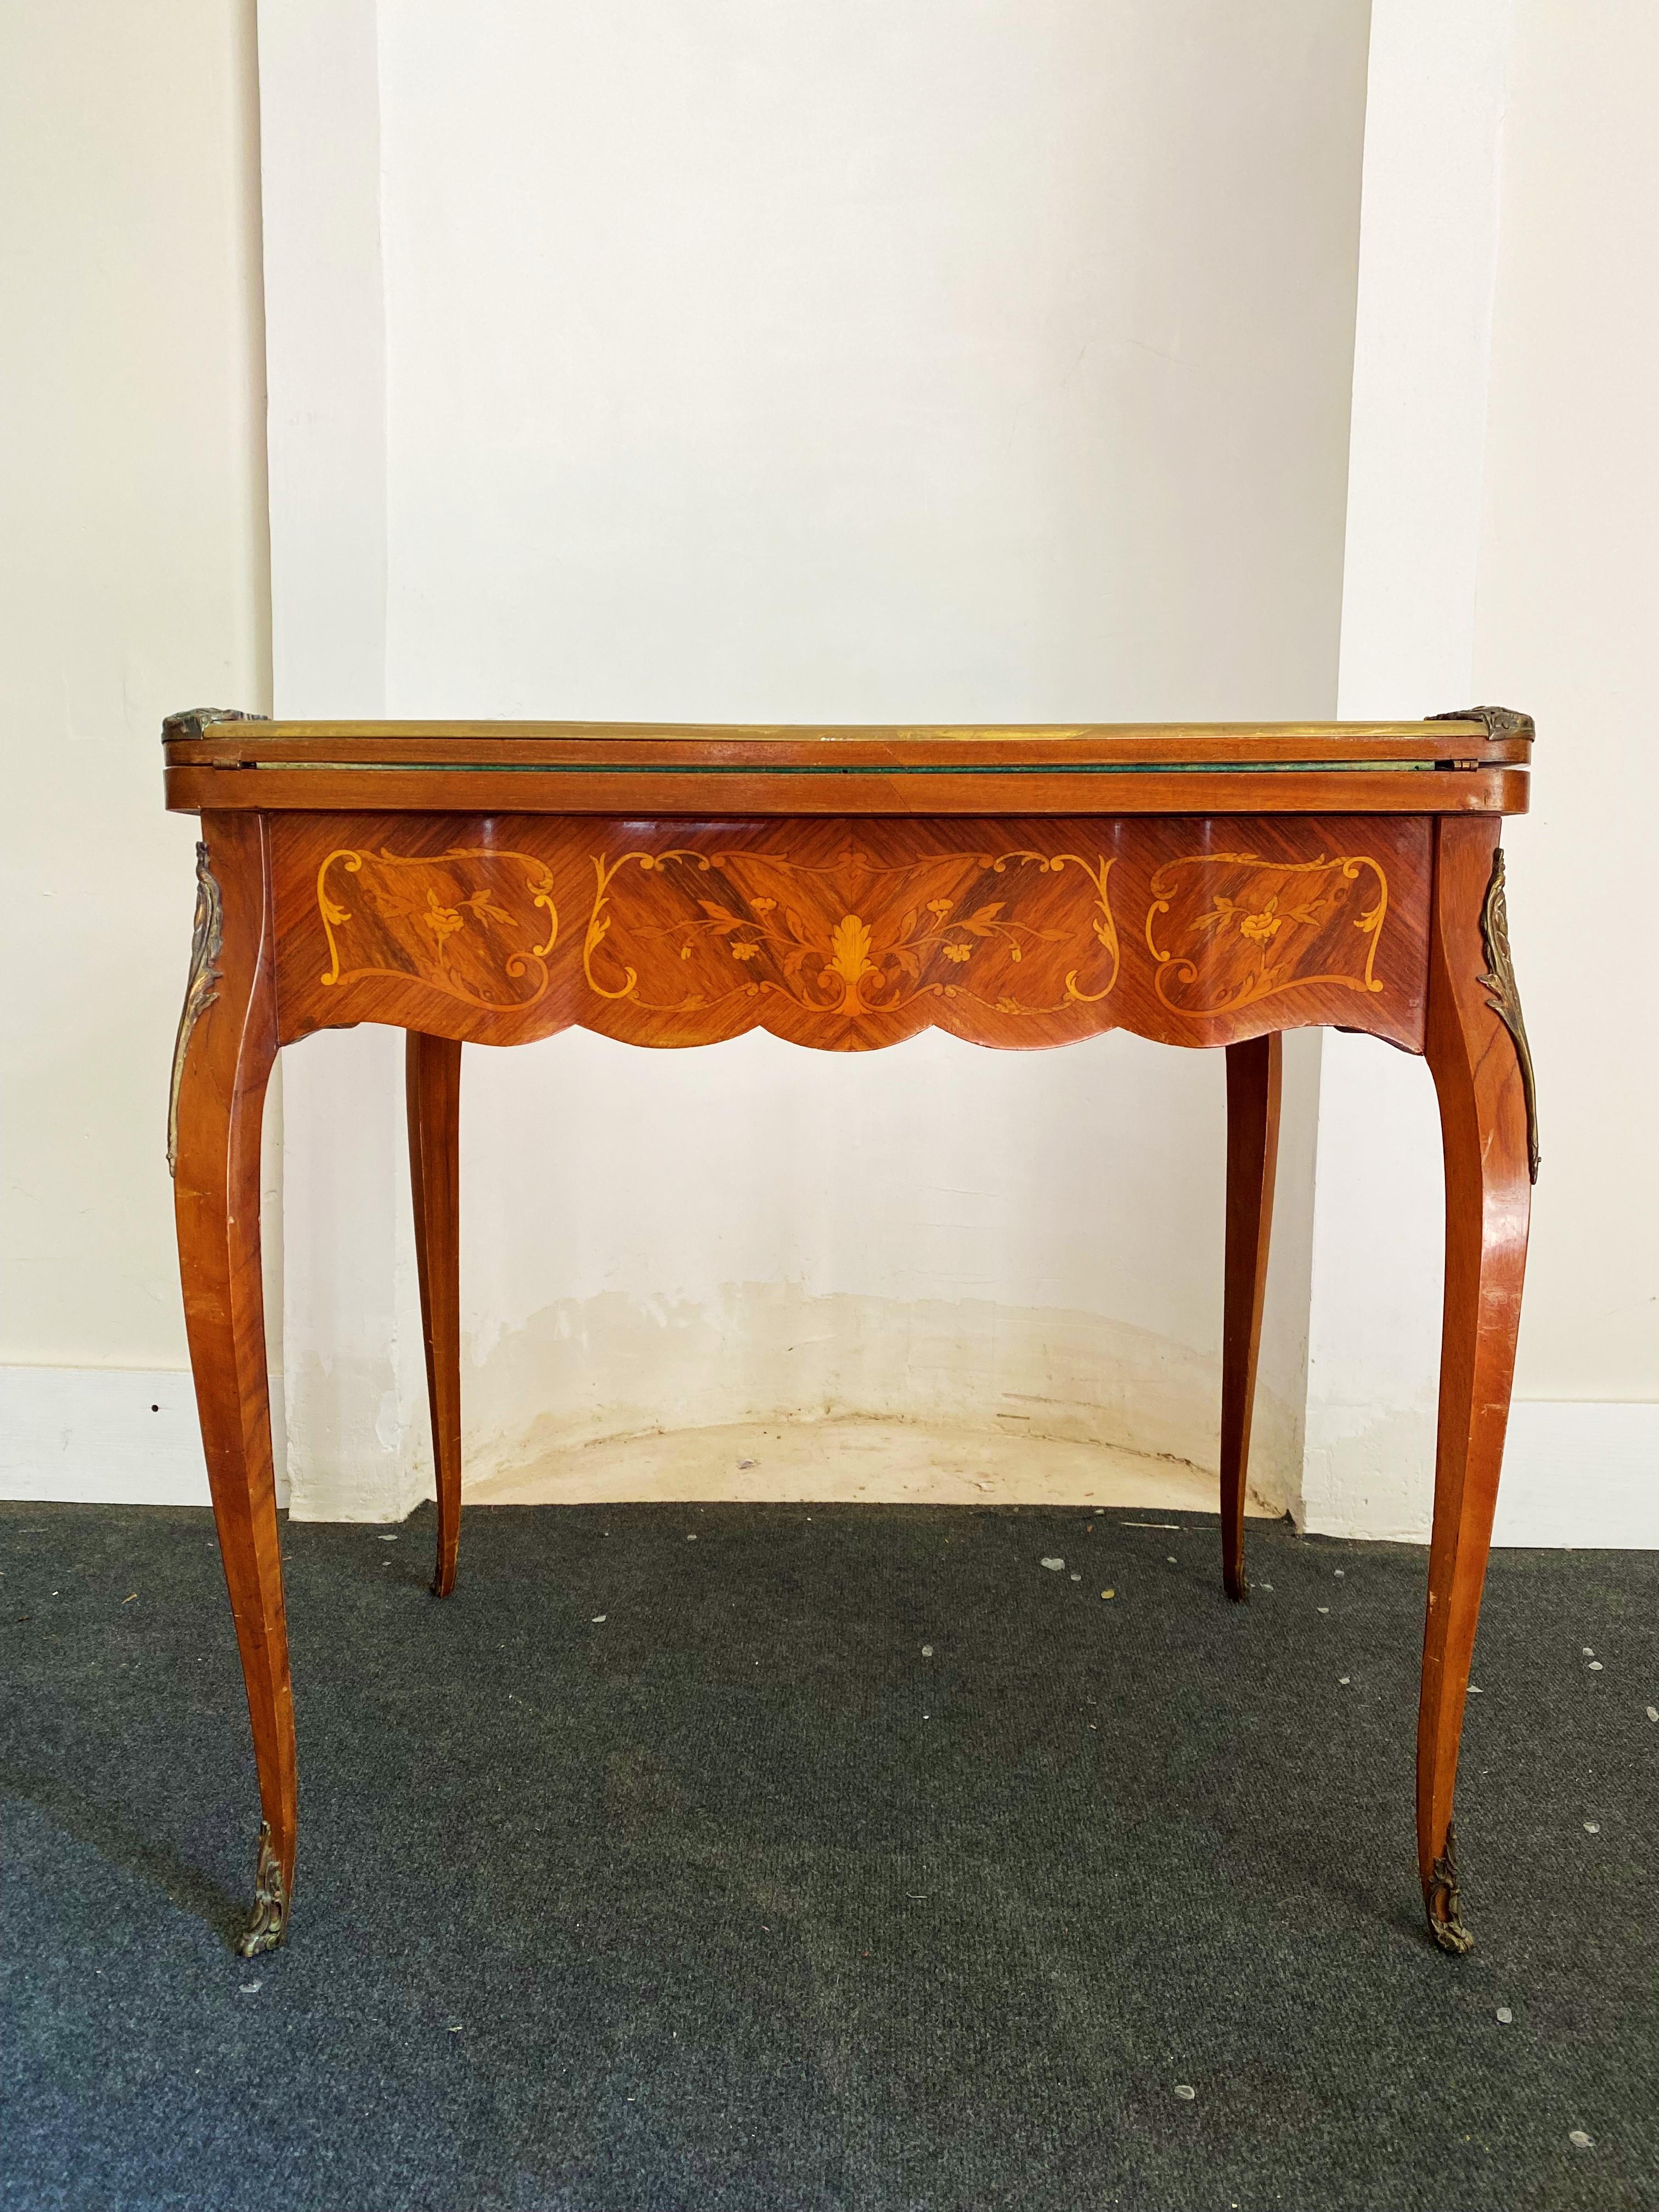 Sehr schöner Spieltisch auf hohen Beinen im Stil Louis XV aus der Periode Napoleon 3 des 19. Jahrhunderts. Das Holz ist fein mit floralen und vegetabilen Motiven eingelegt. Die Beine sind geschwungen, die Spitzen der Beine sind aus Metall, während